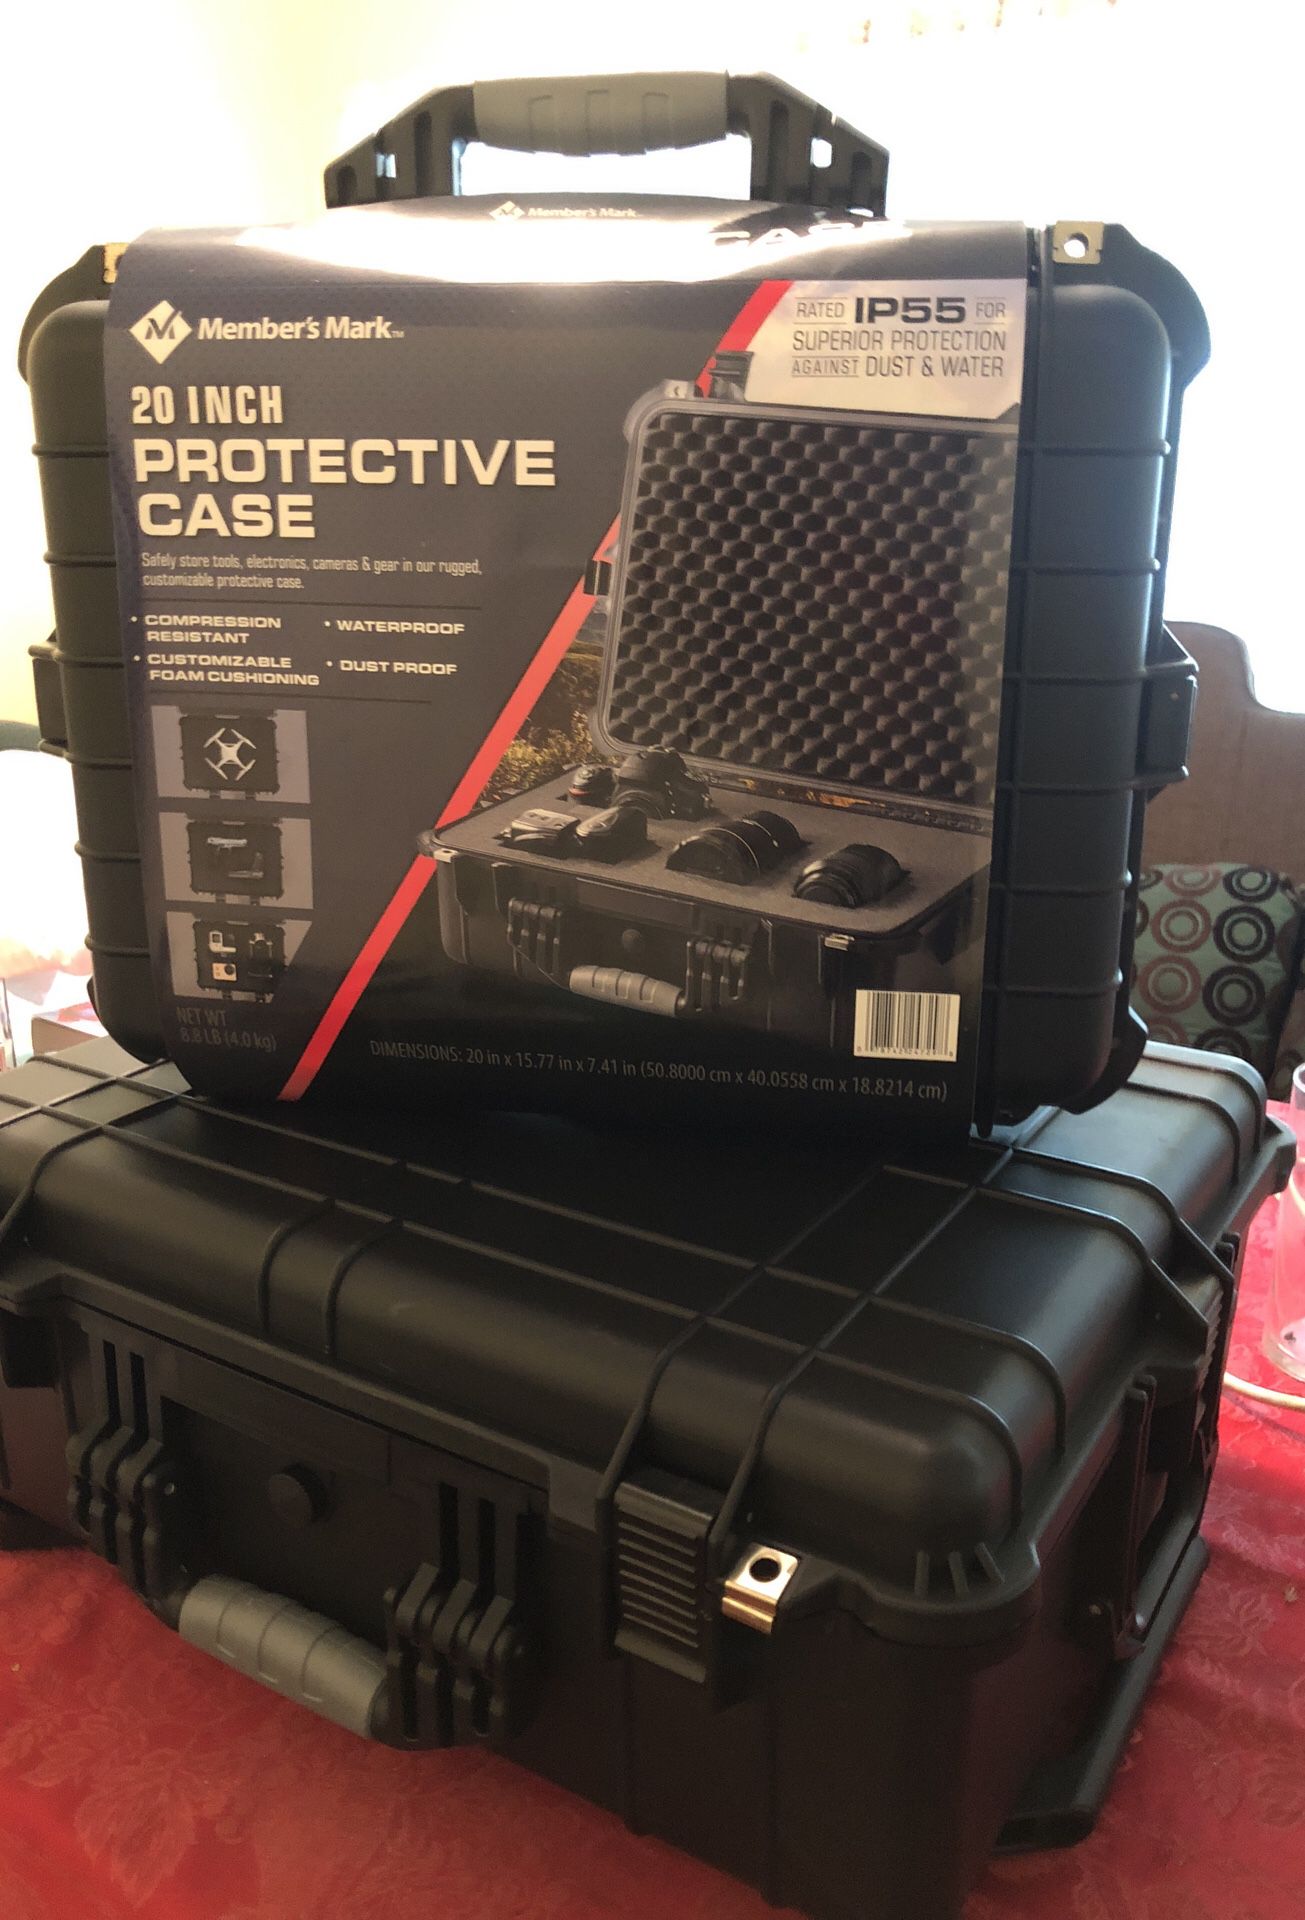 Multi-purpose protective case